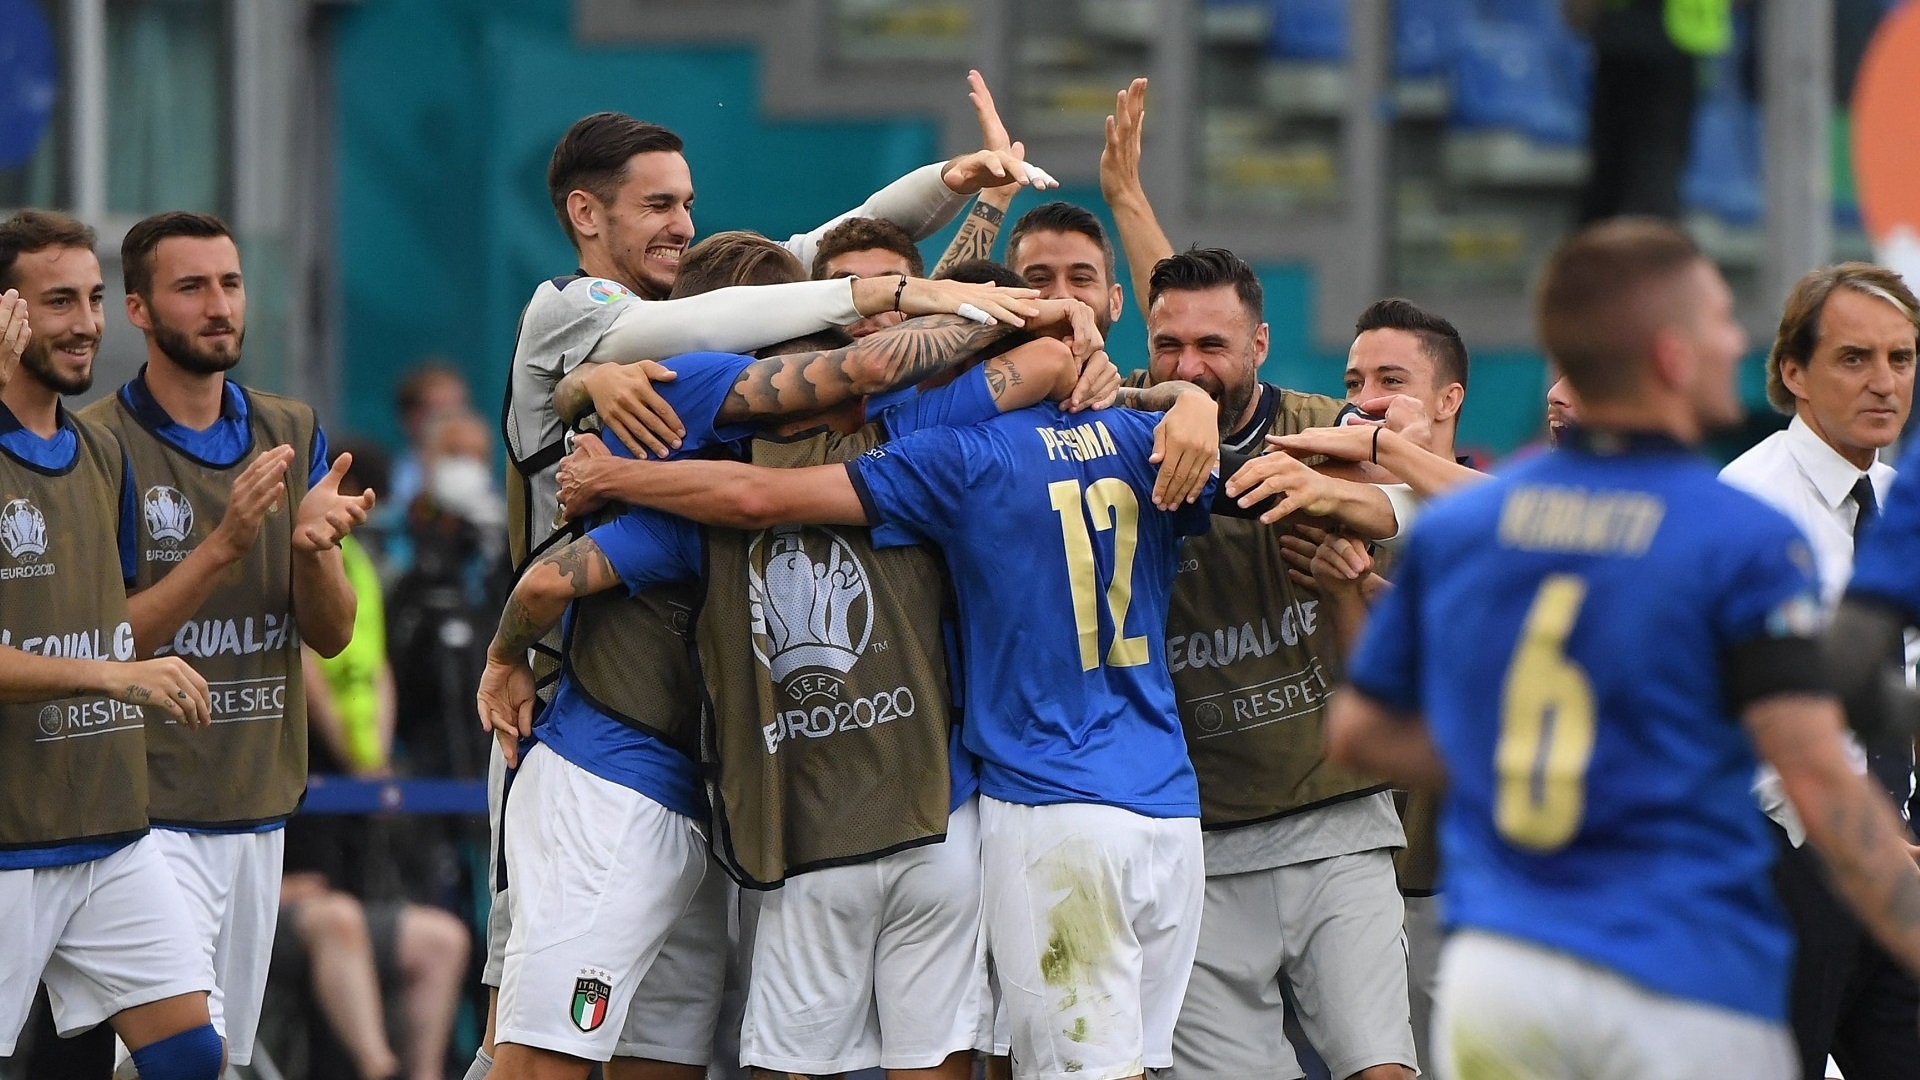 Euro2020, l’Italia passa a punteggio pieno: il resoconto della terza giornata